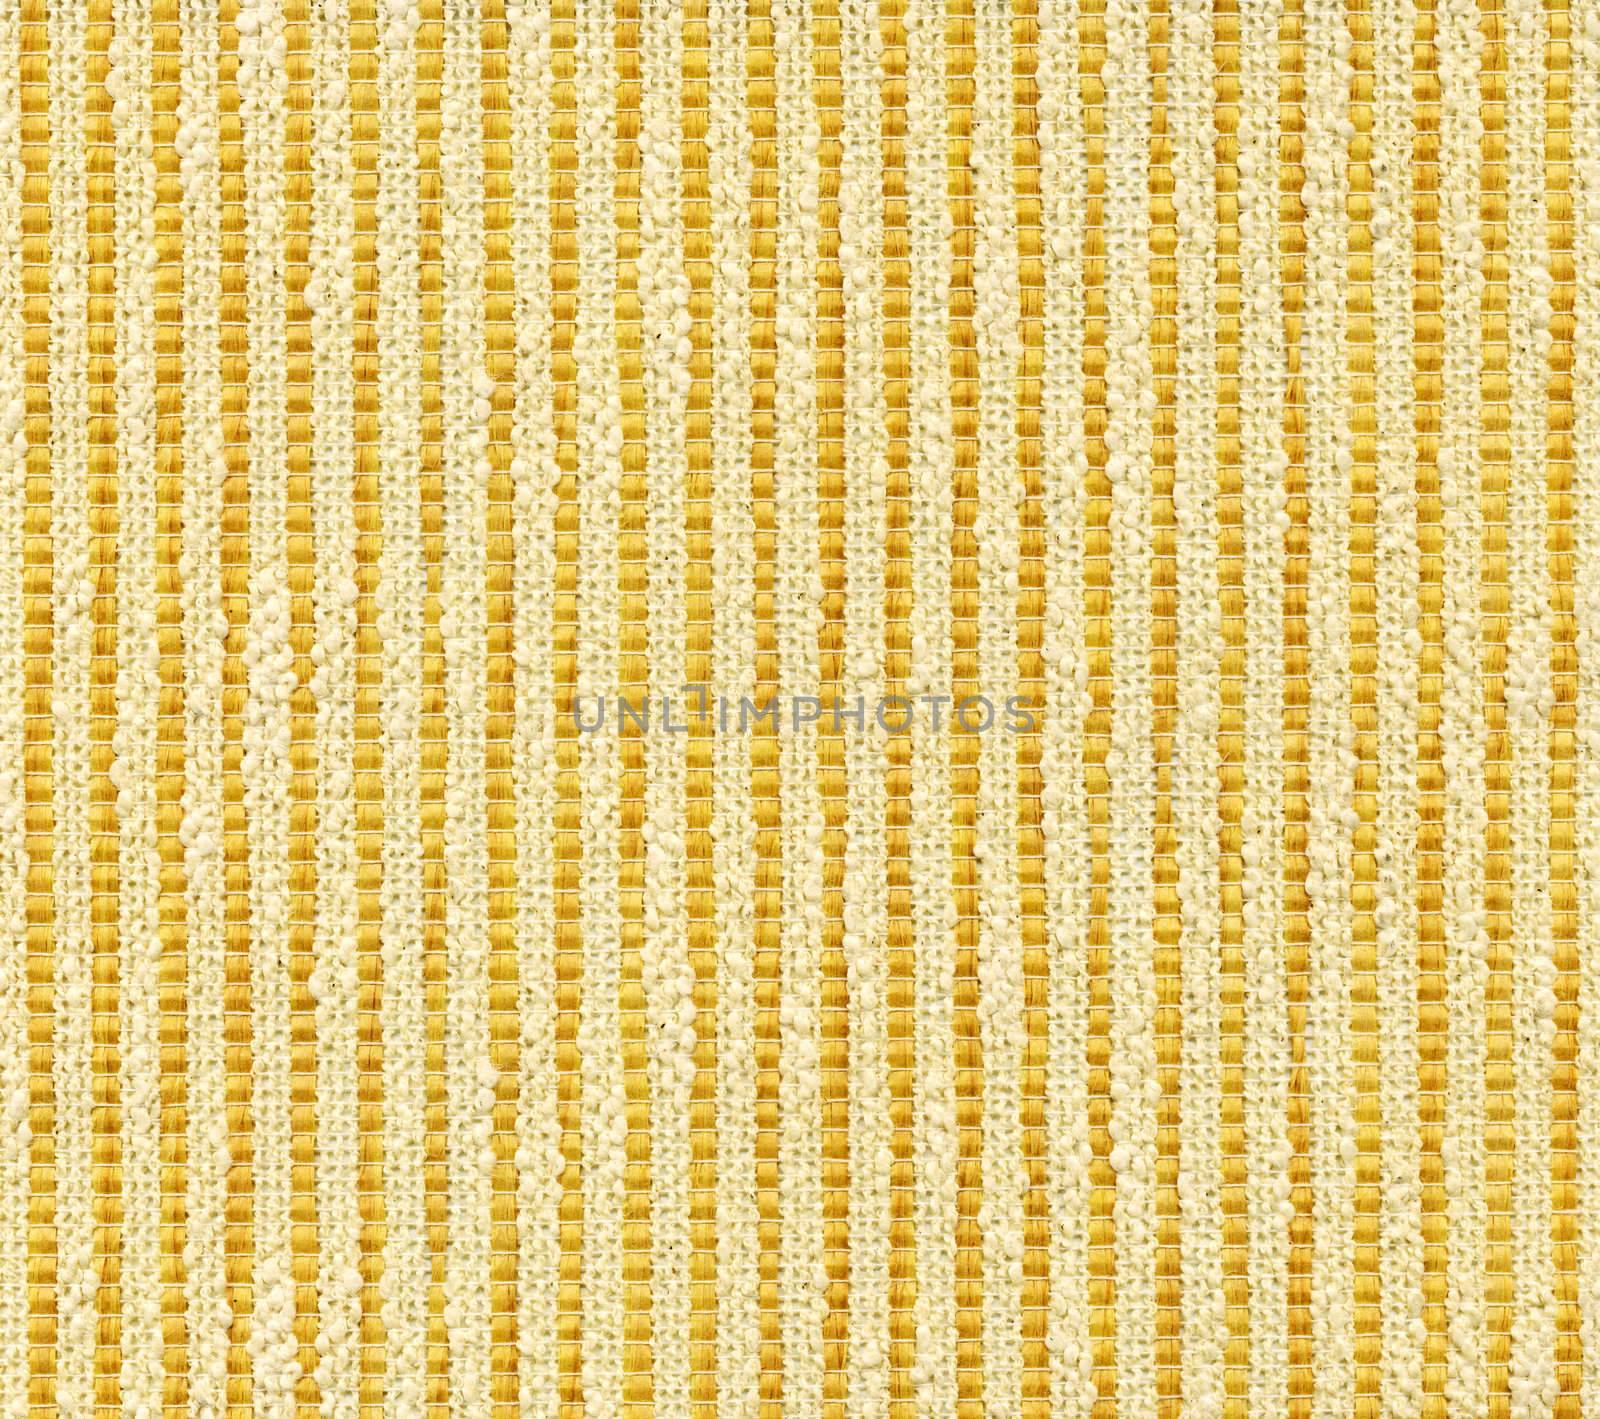 Yellow textile flax fabric wickerwork texture background by aptyp_kok